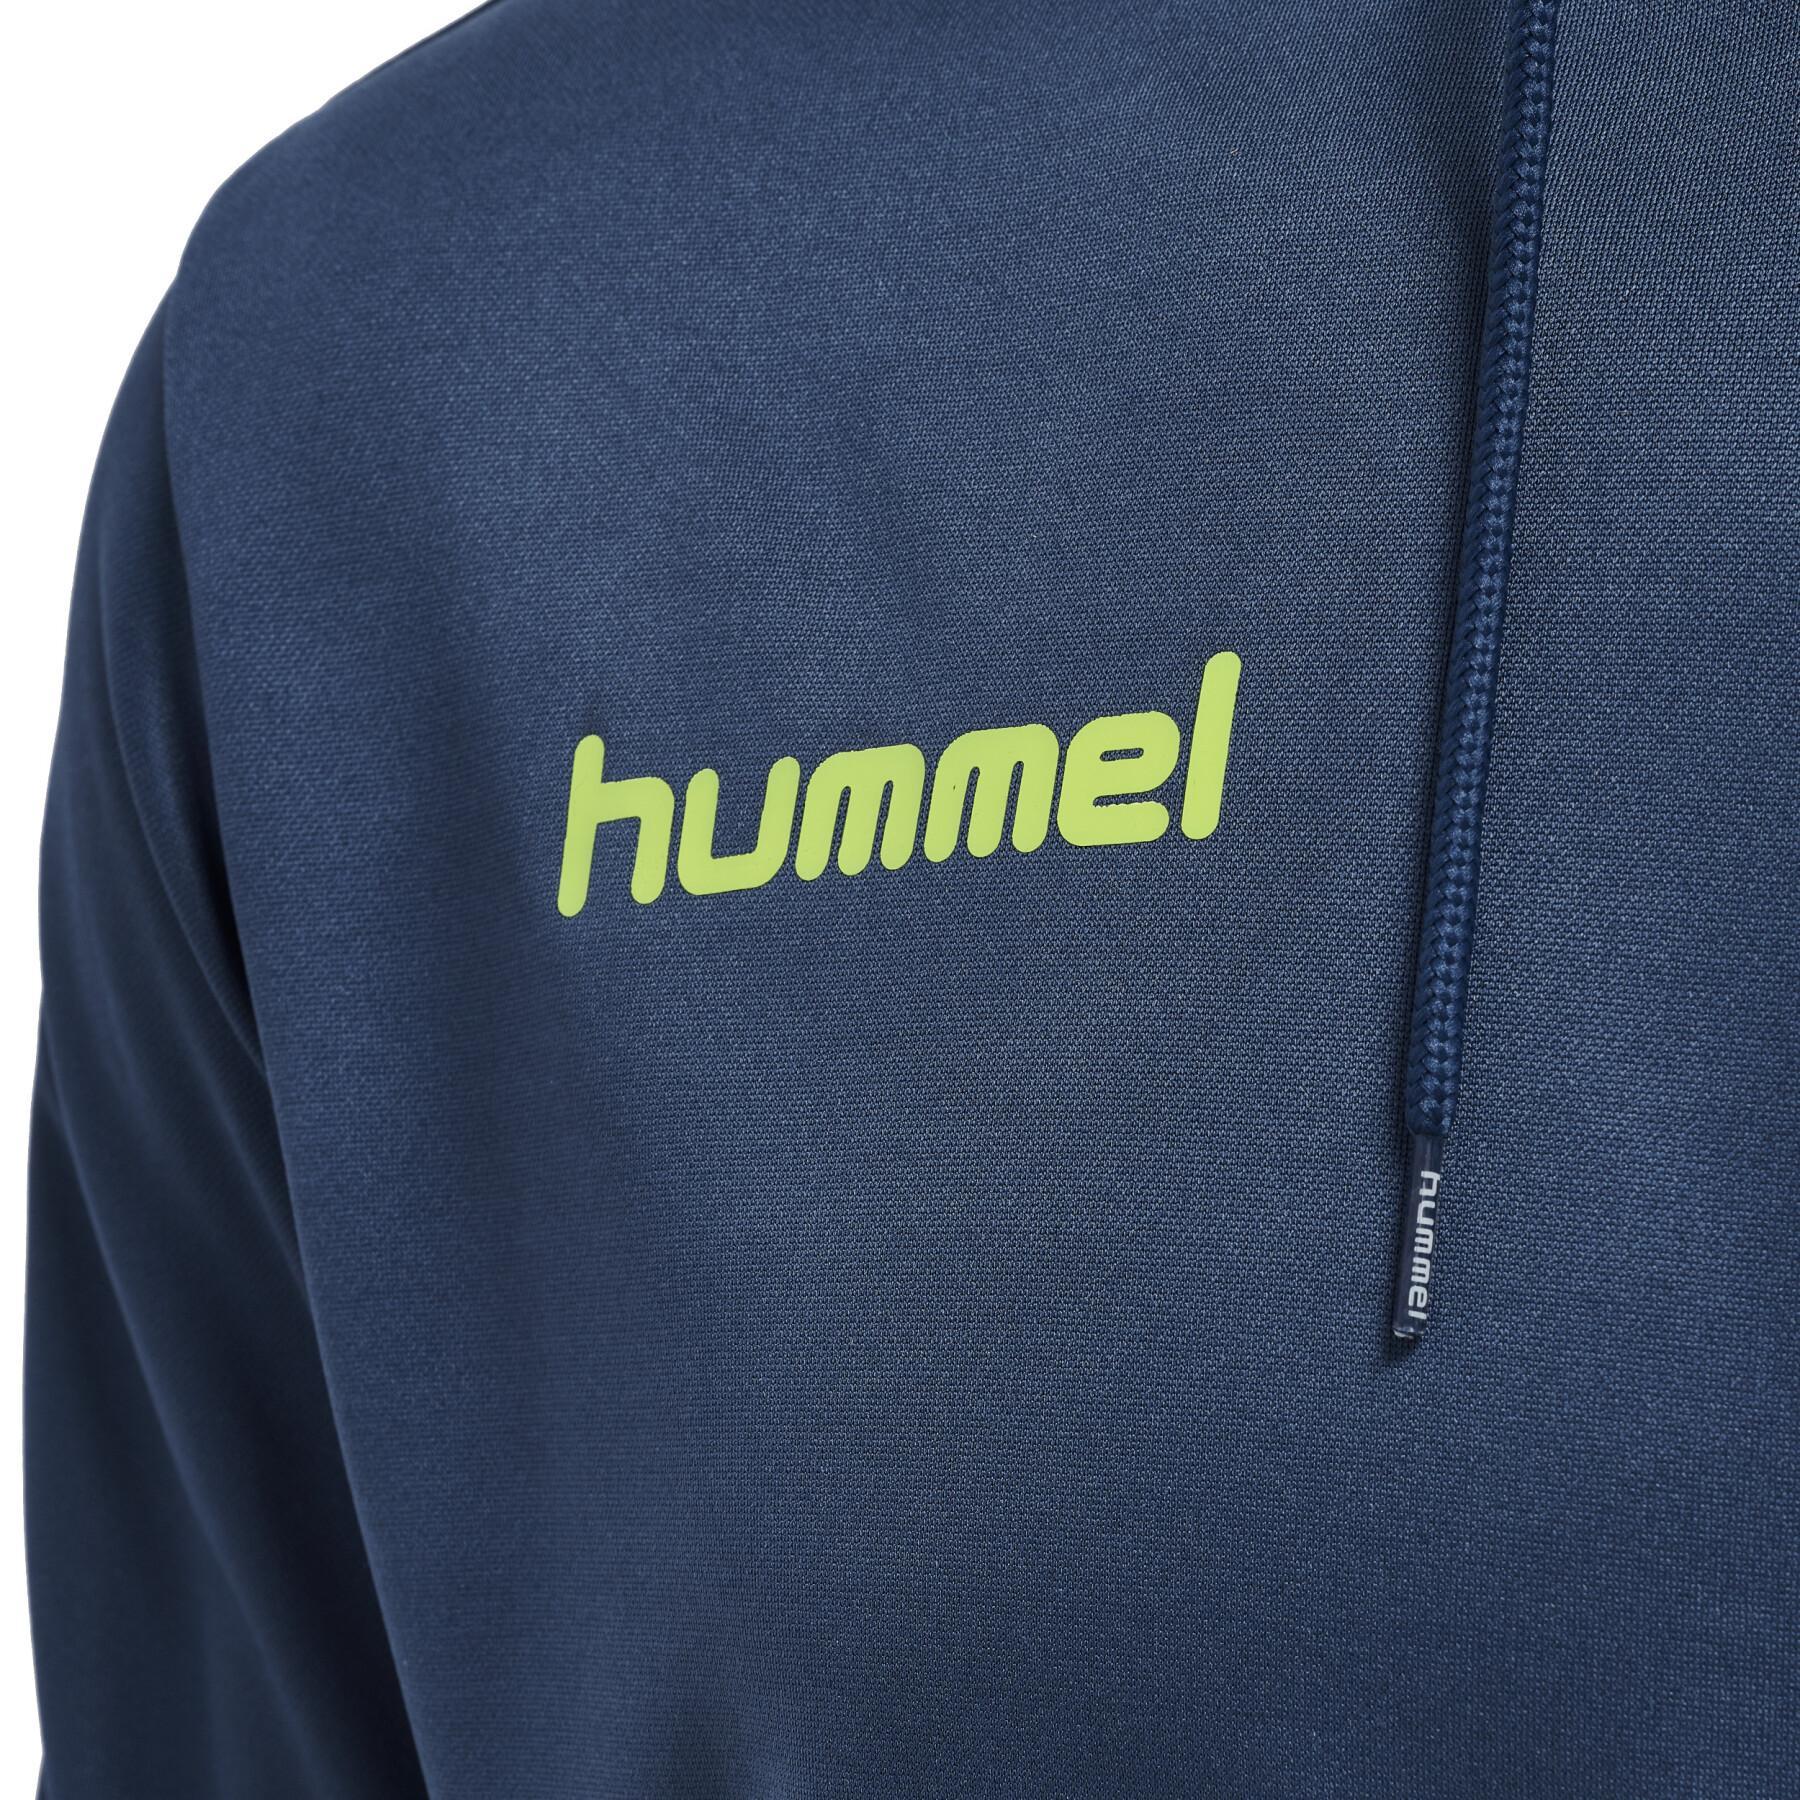 Hooded sweatshirt Sportswear Hoodies Sweats - Sweats Promo Hummel - - Hummel 